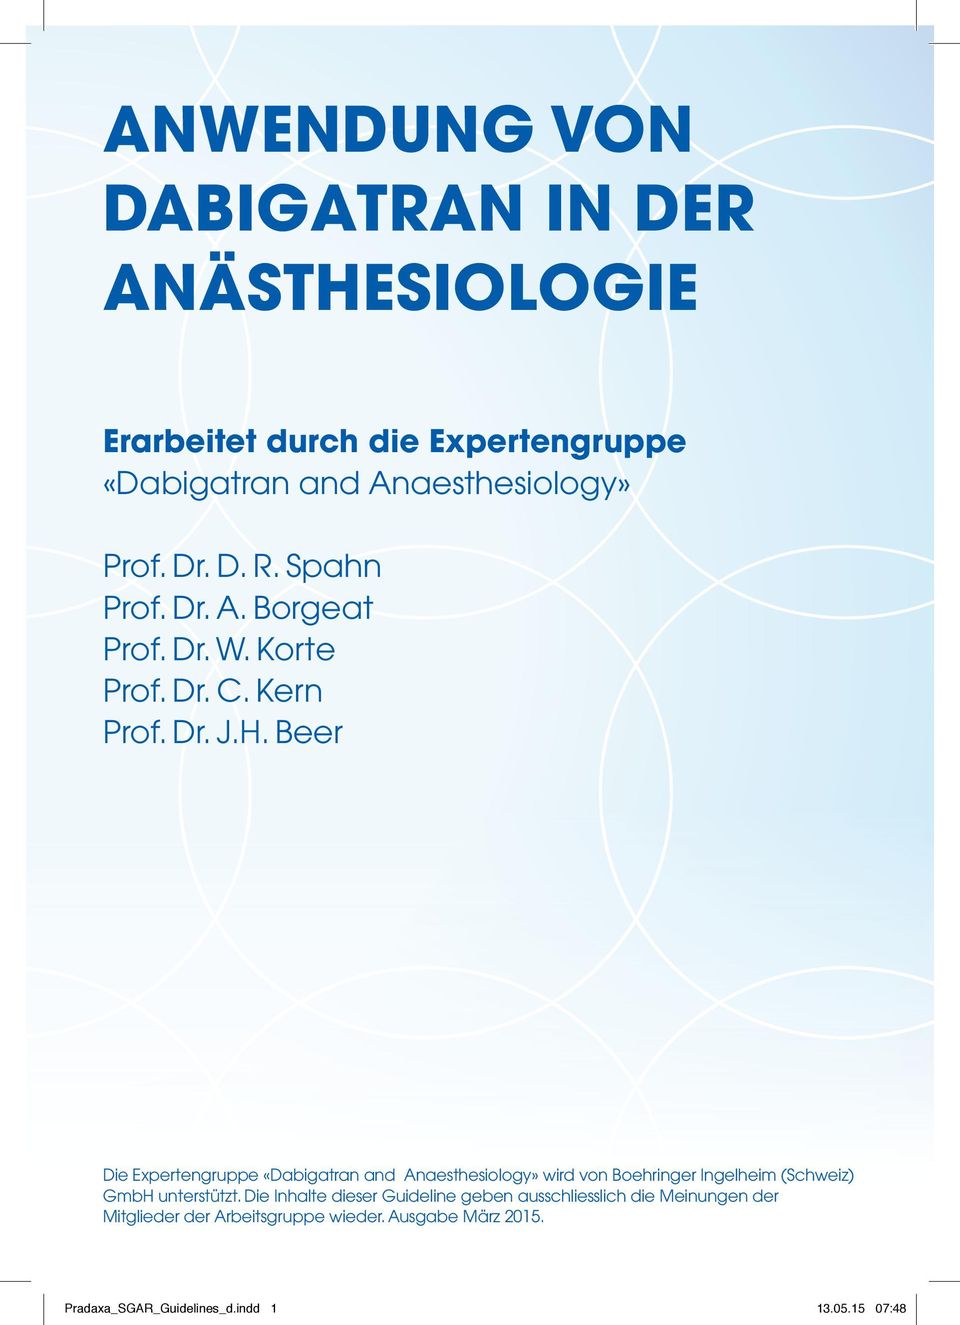 Beer Die Expertengruppe «Dabigatran and Anaesthesiology» wird von Boehringer Ingelheim (Schweiz) GmbH unterstützt.